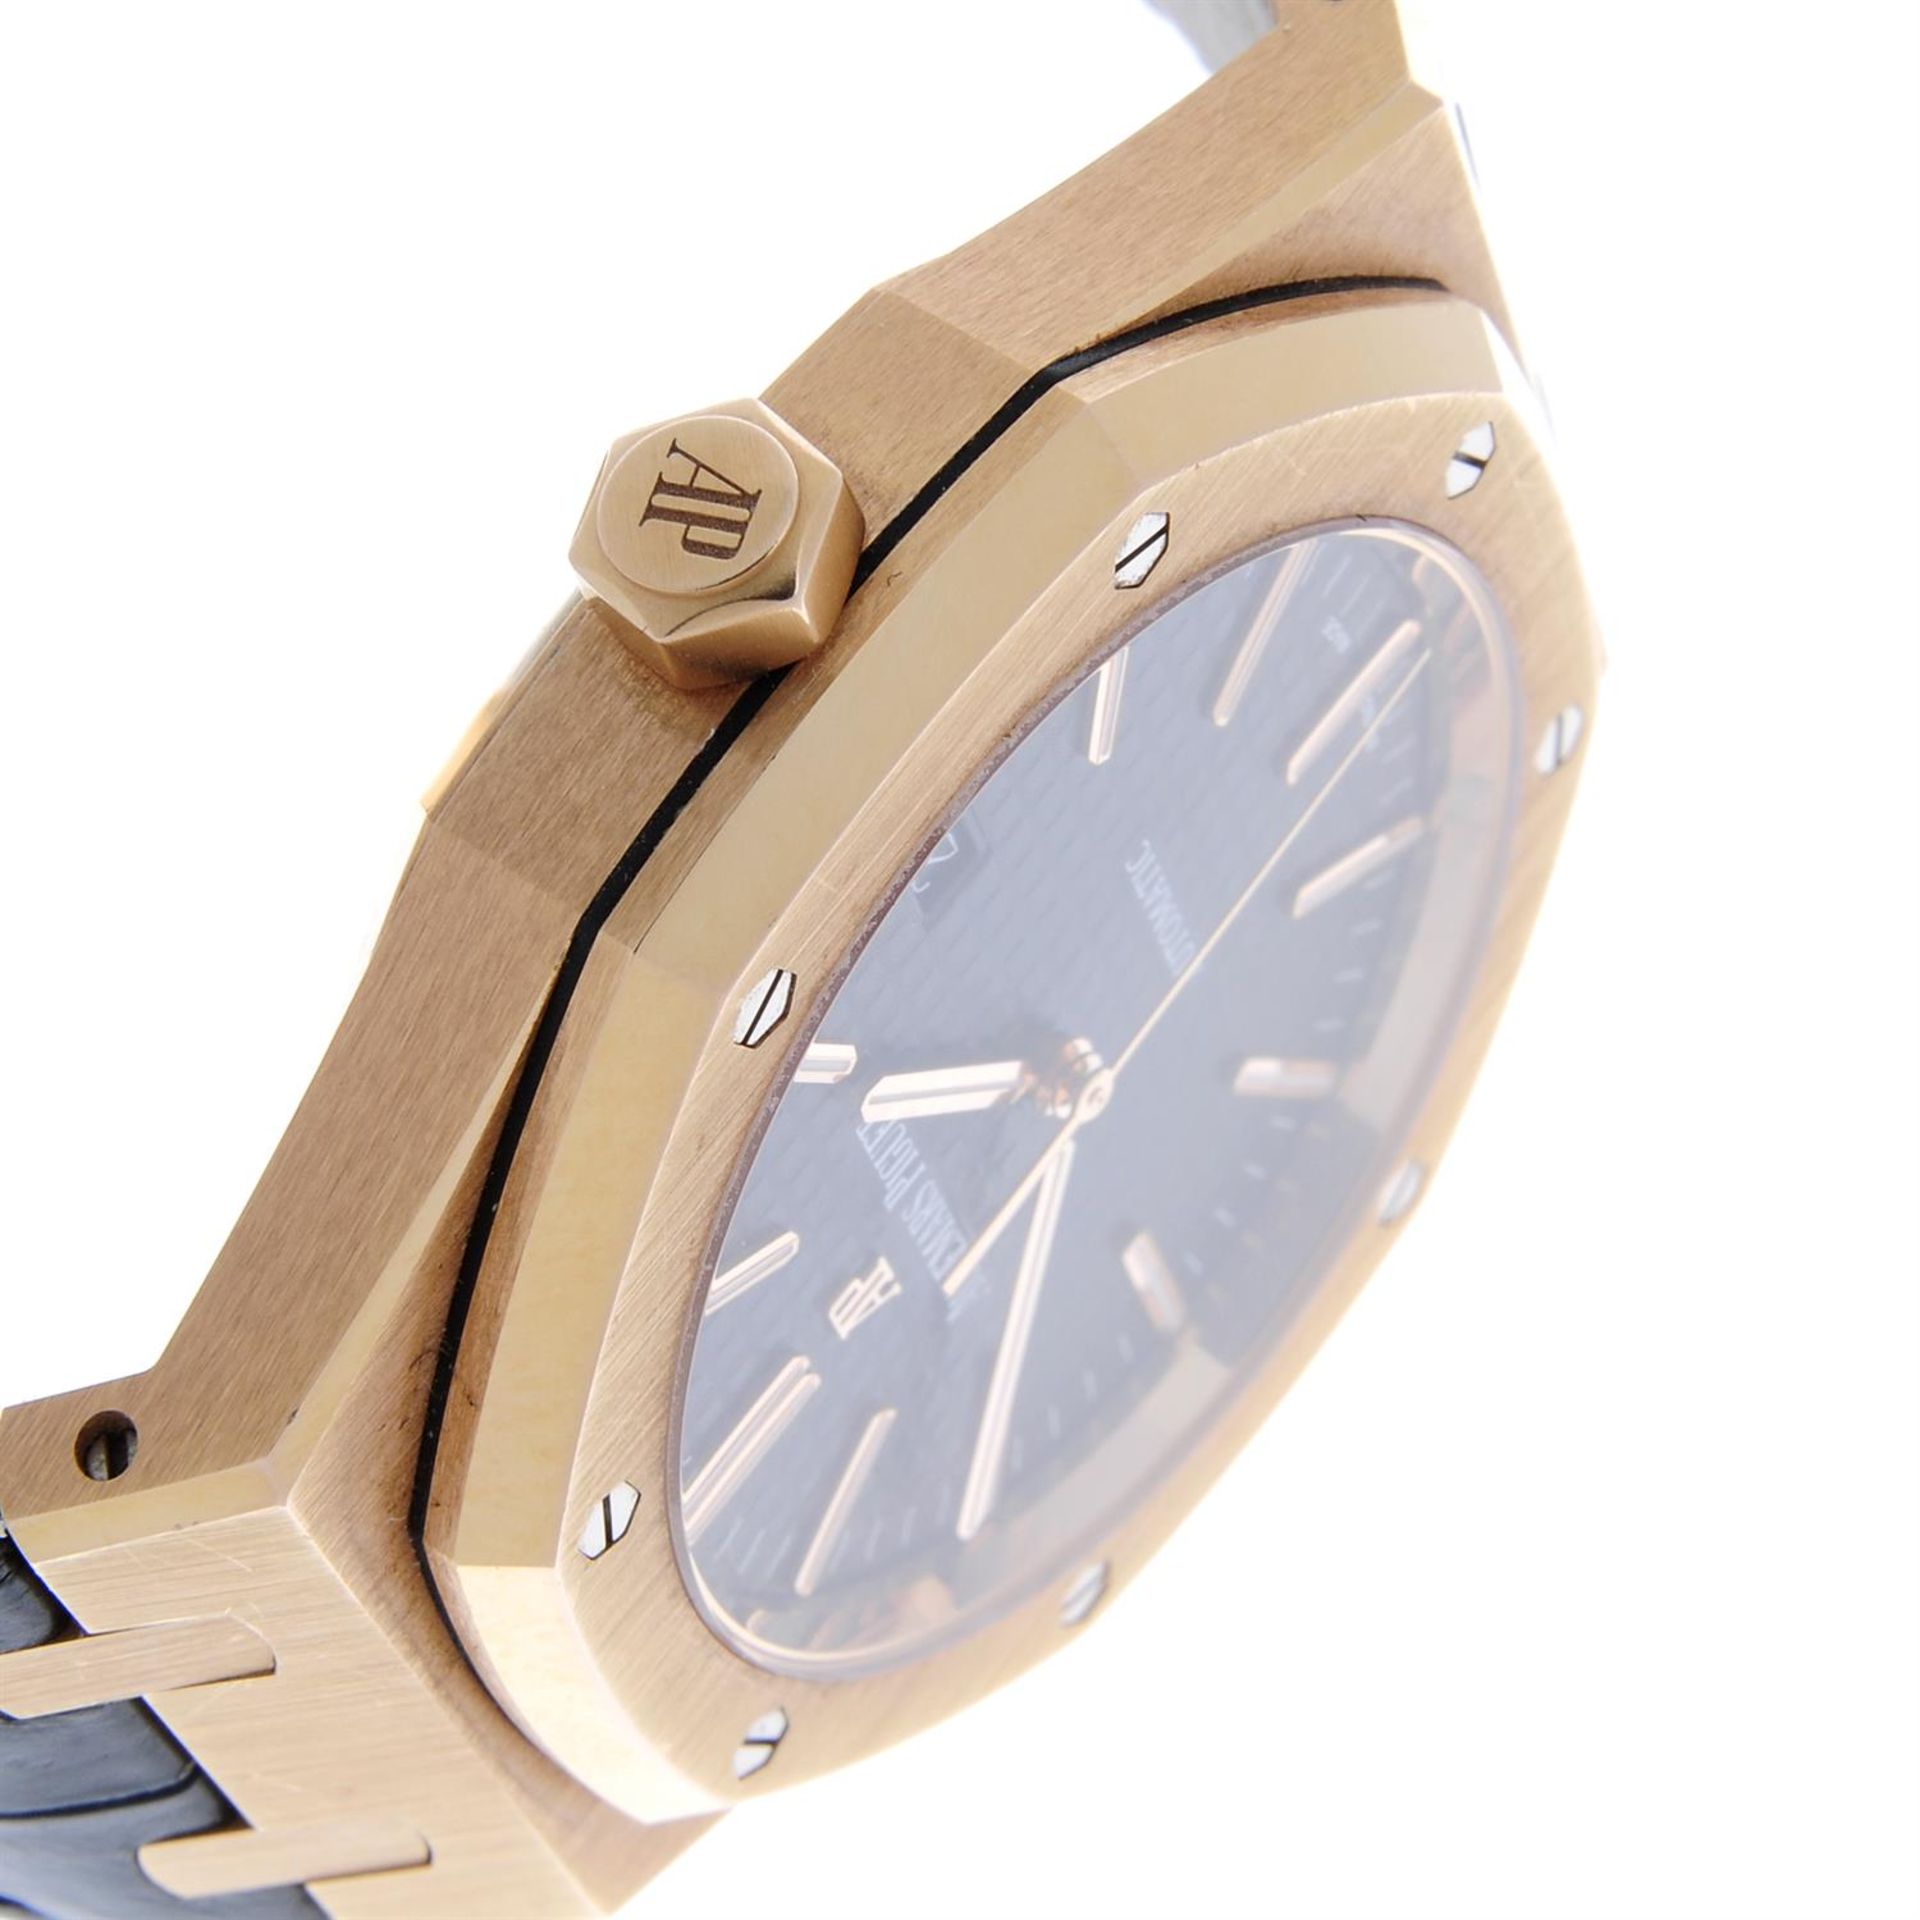 AUDEMARS PIGUET - an 18ct rose gold Royal Oak wrist watch, 41mm. - Image 3 of 6